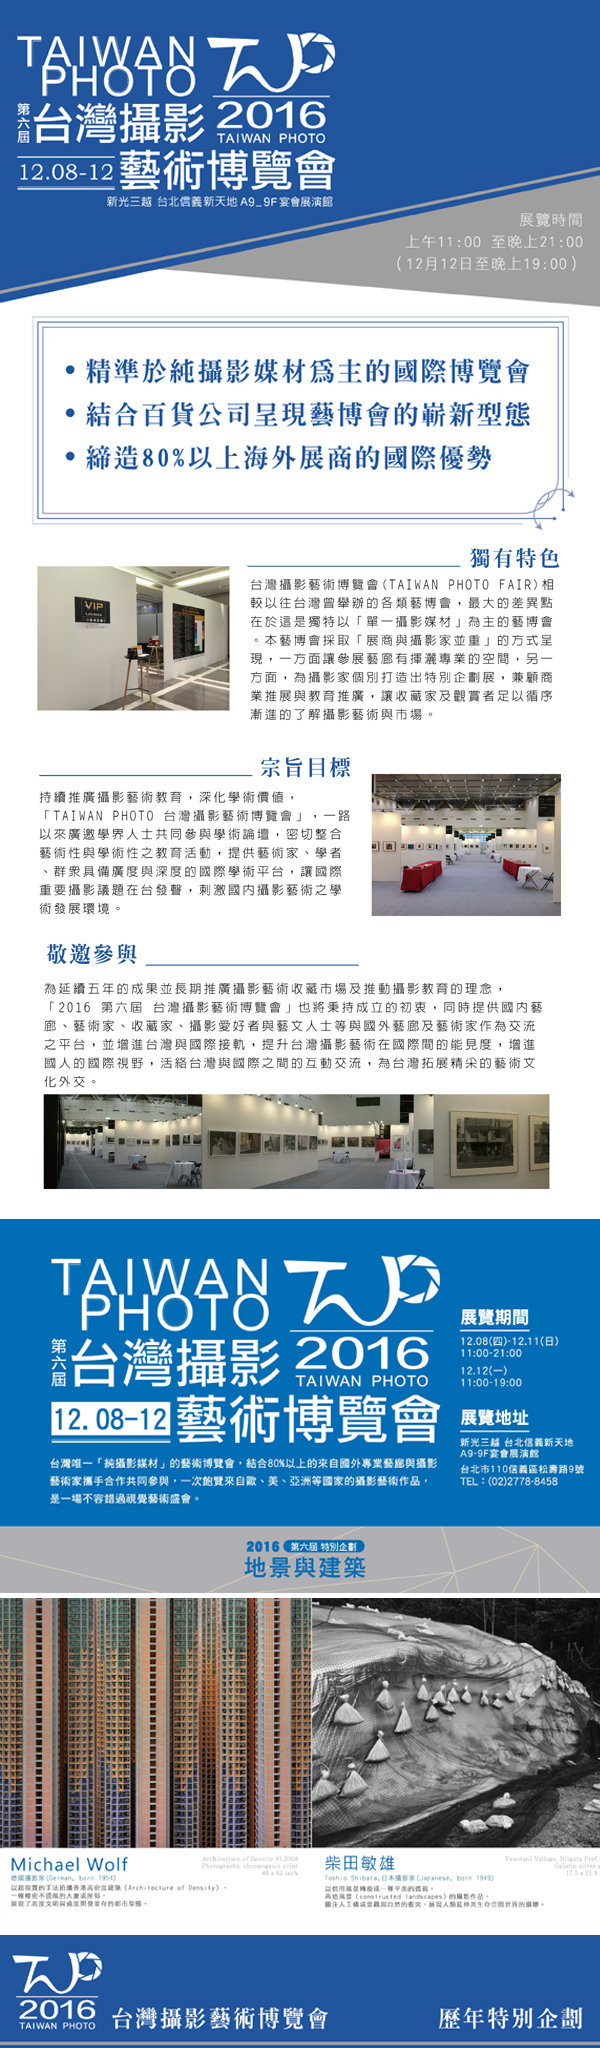 〈第六屆 台灣攝影藝術博覽會〉